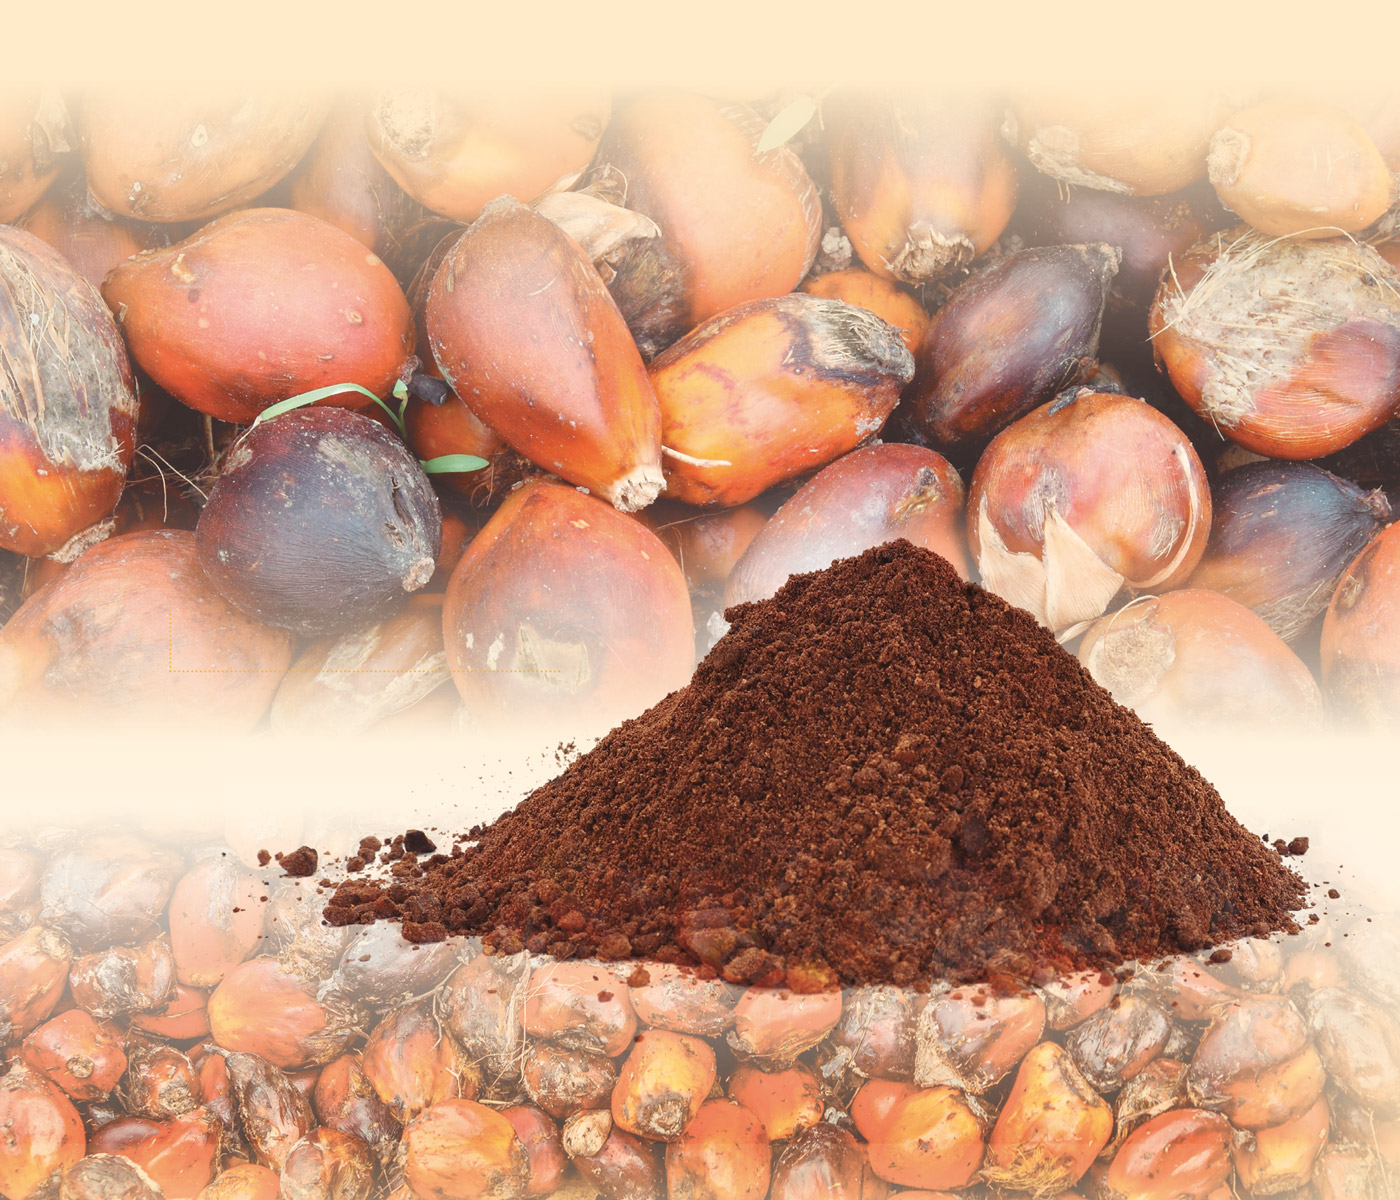 Ficha de materia prima: Torta y harina de palmiste